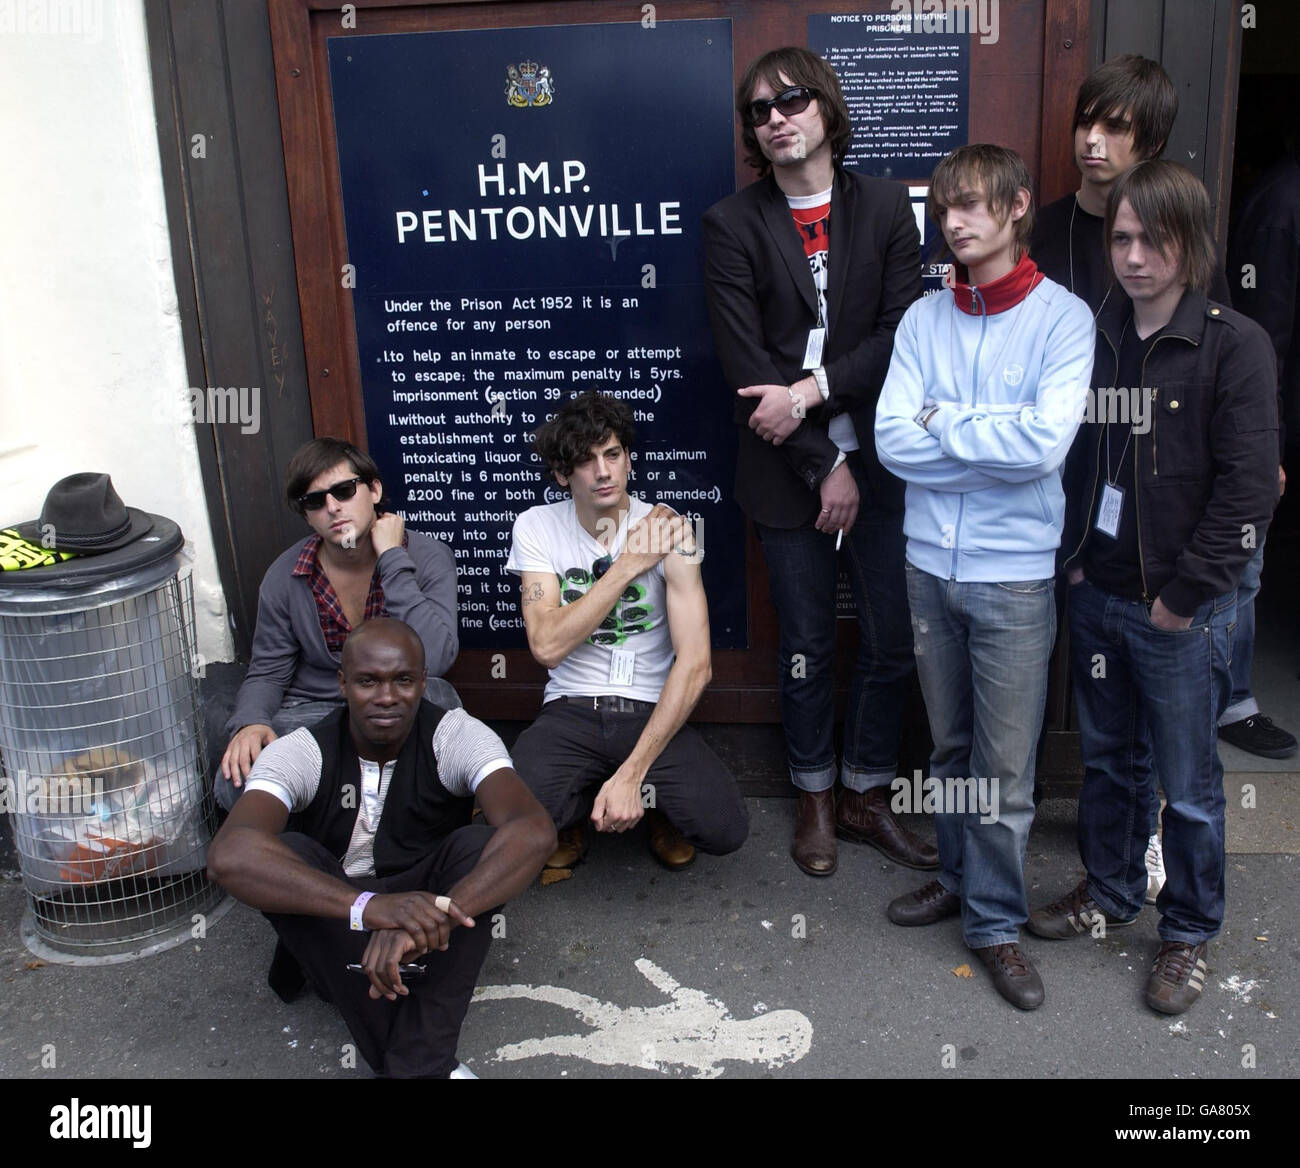 Dirty Pretty Things e The Enemy posano per le foto al penitenziario di Pentonville, a nord di Londra, dove entrambe le band hanno tenuto un concerto in aiuto della beneficenza Wasted Youth. Foto Stock